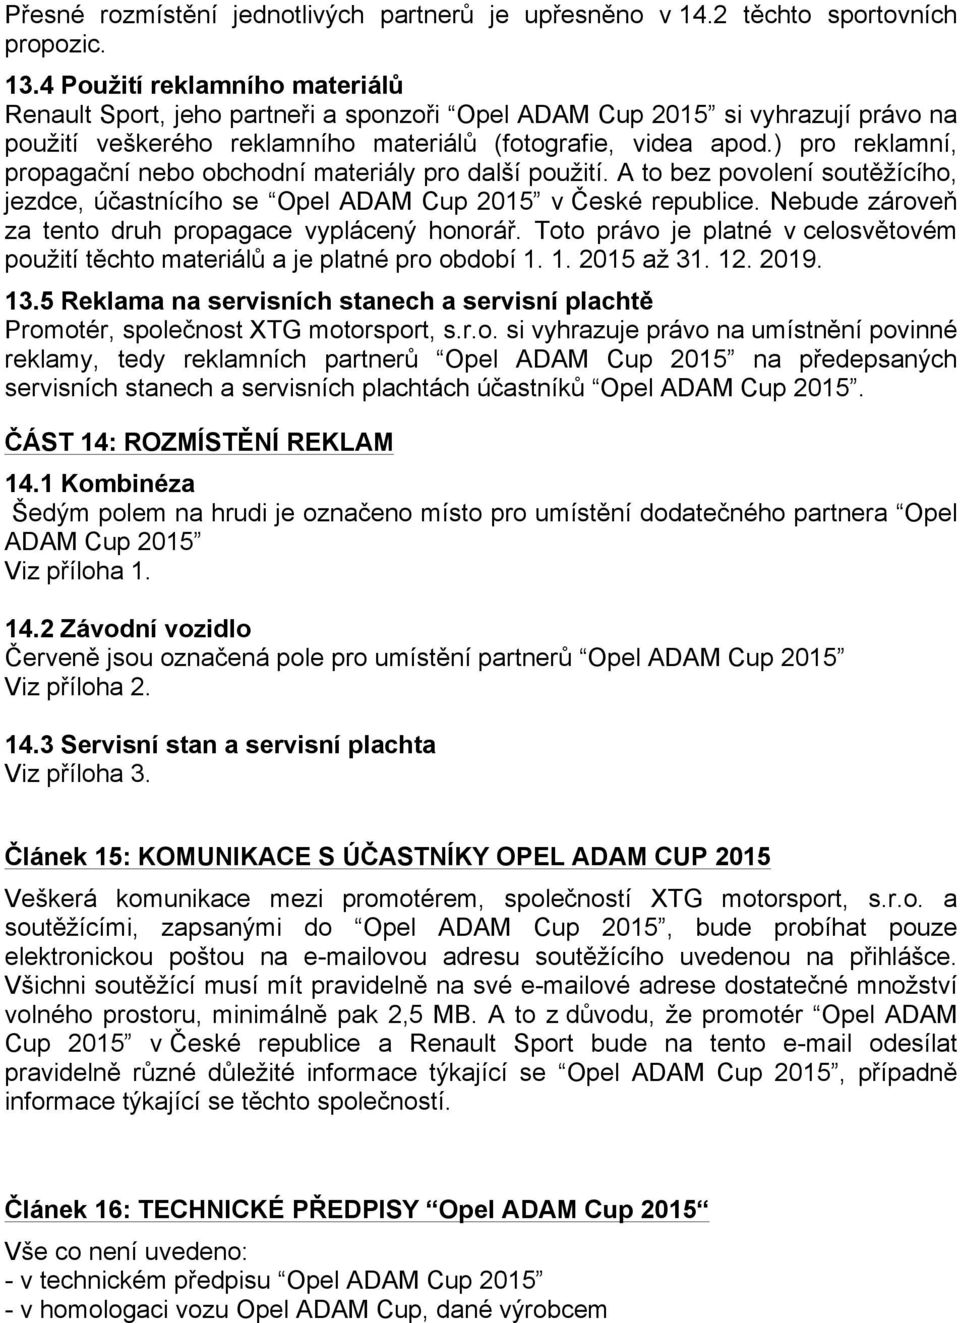 ) pro reklamní, propagační nebo obchodní materiály pro další použití. A to bez povolení soutěžícího, jezdce, účastnícího se Opel ADAM Cup 2015 v České republice.